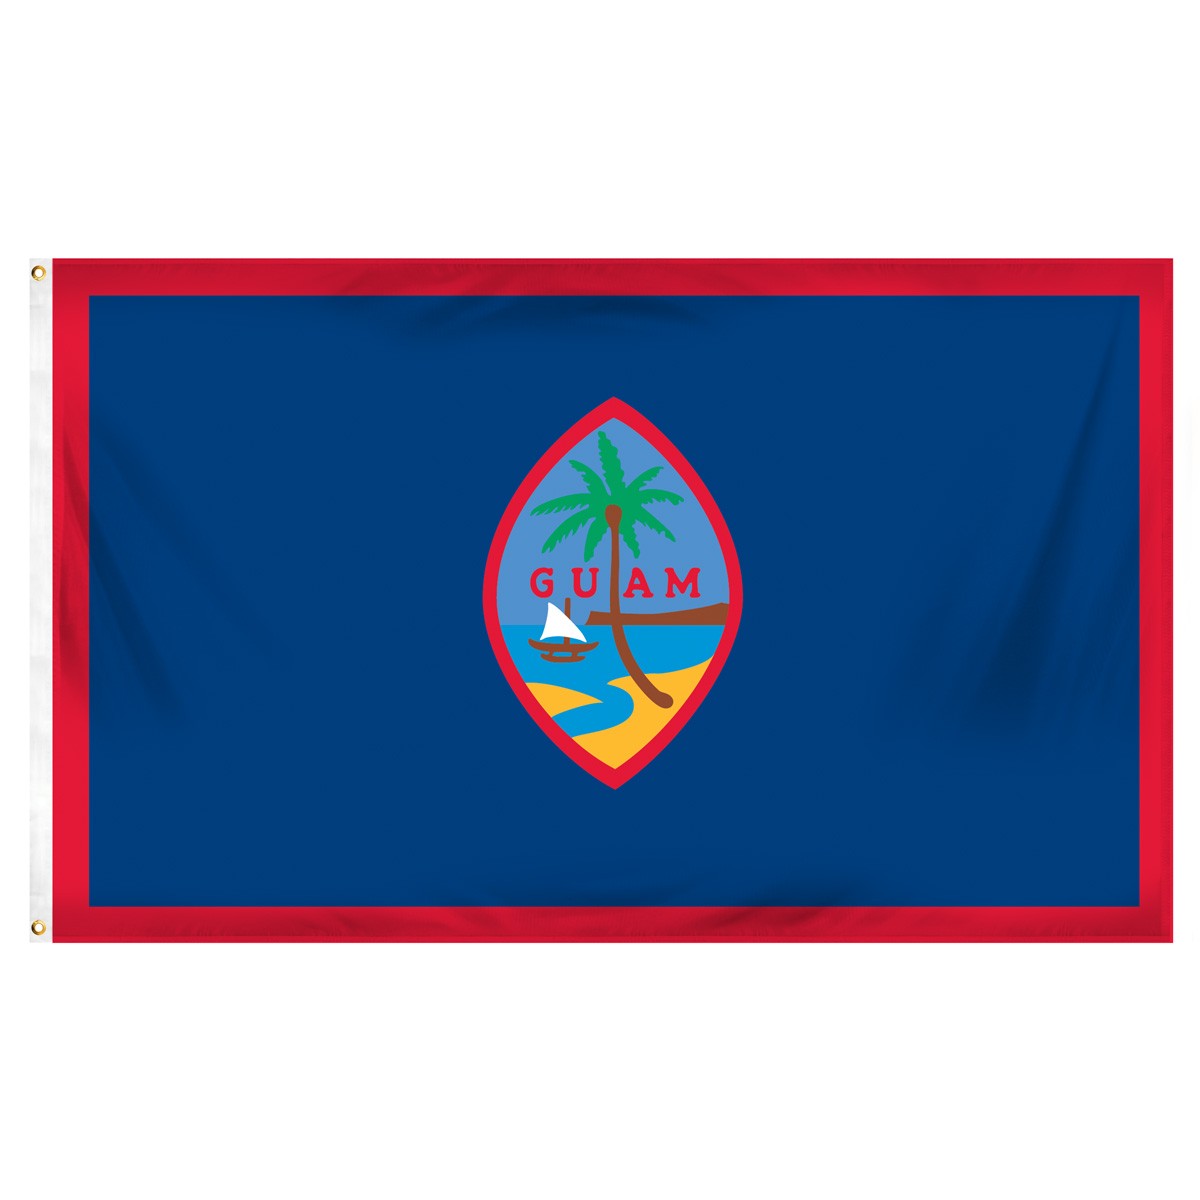 Guam Beach Flag and Sailing Flag